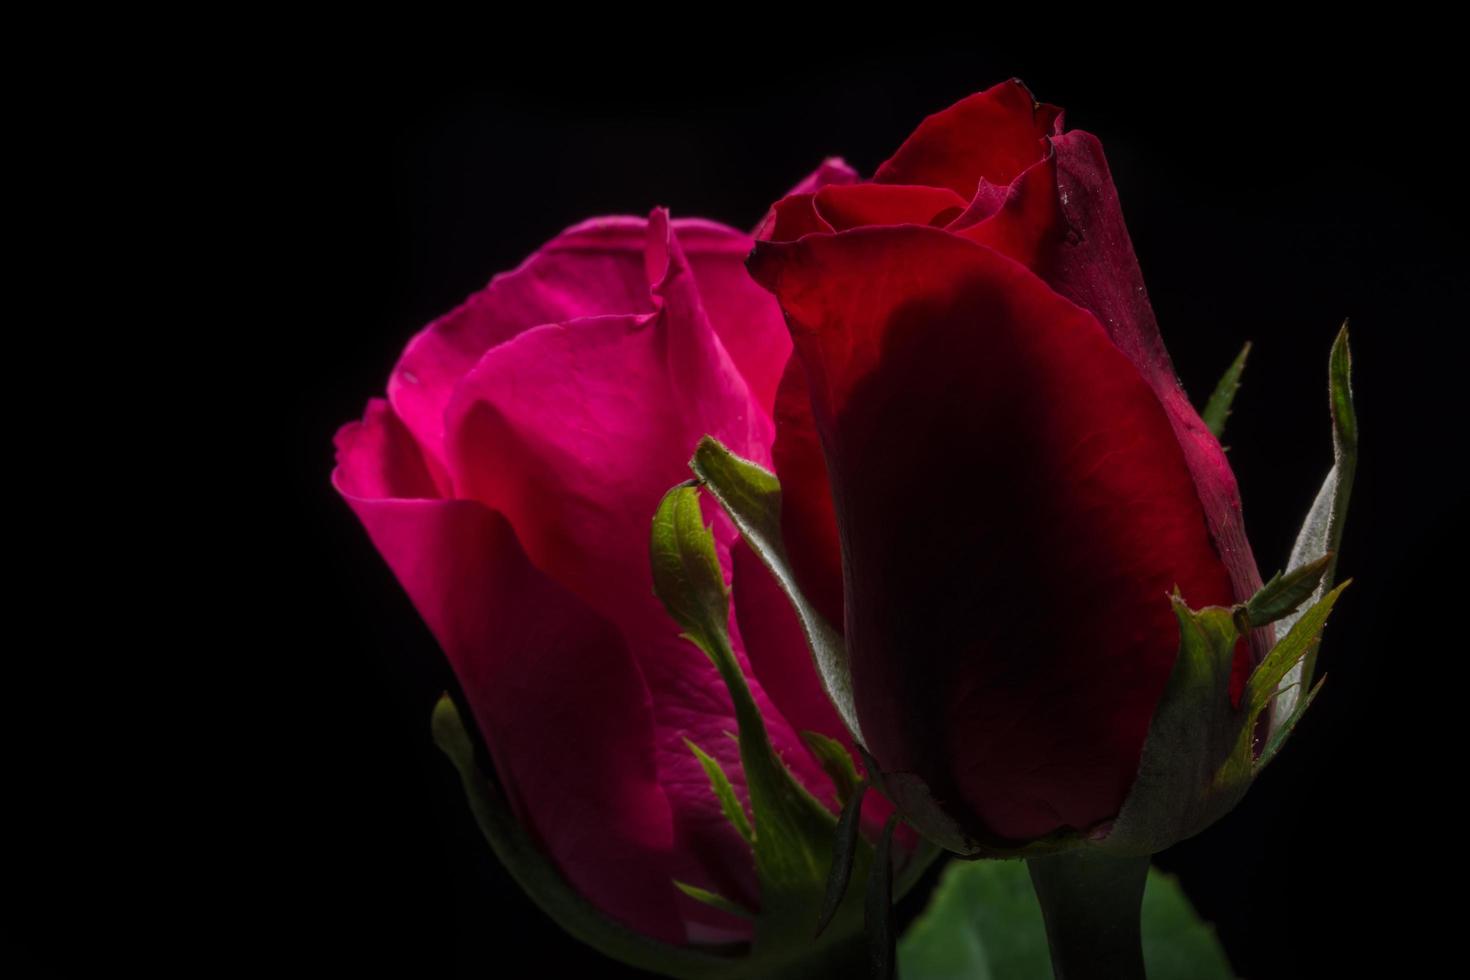 schöne rote Rosen auf schwarzem Hintergrund foto